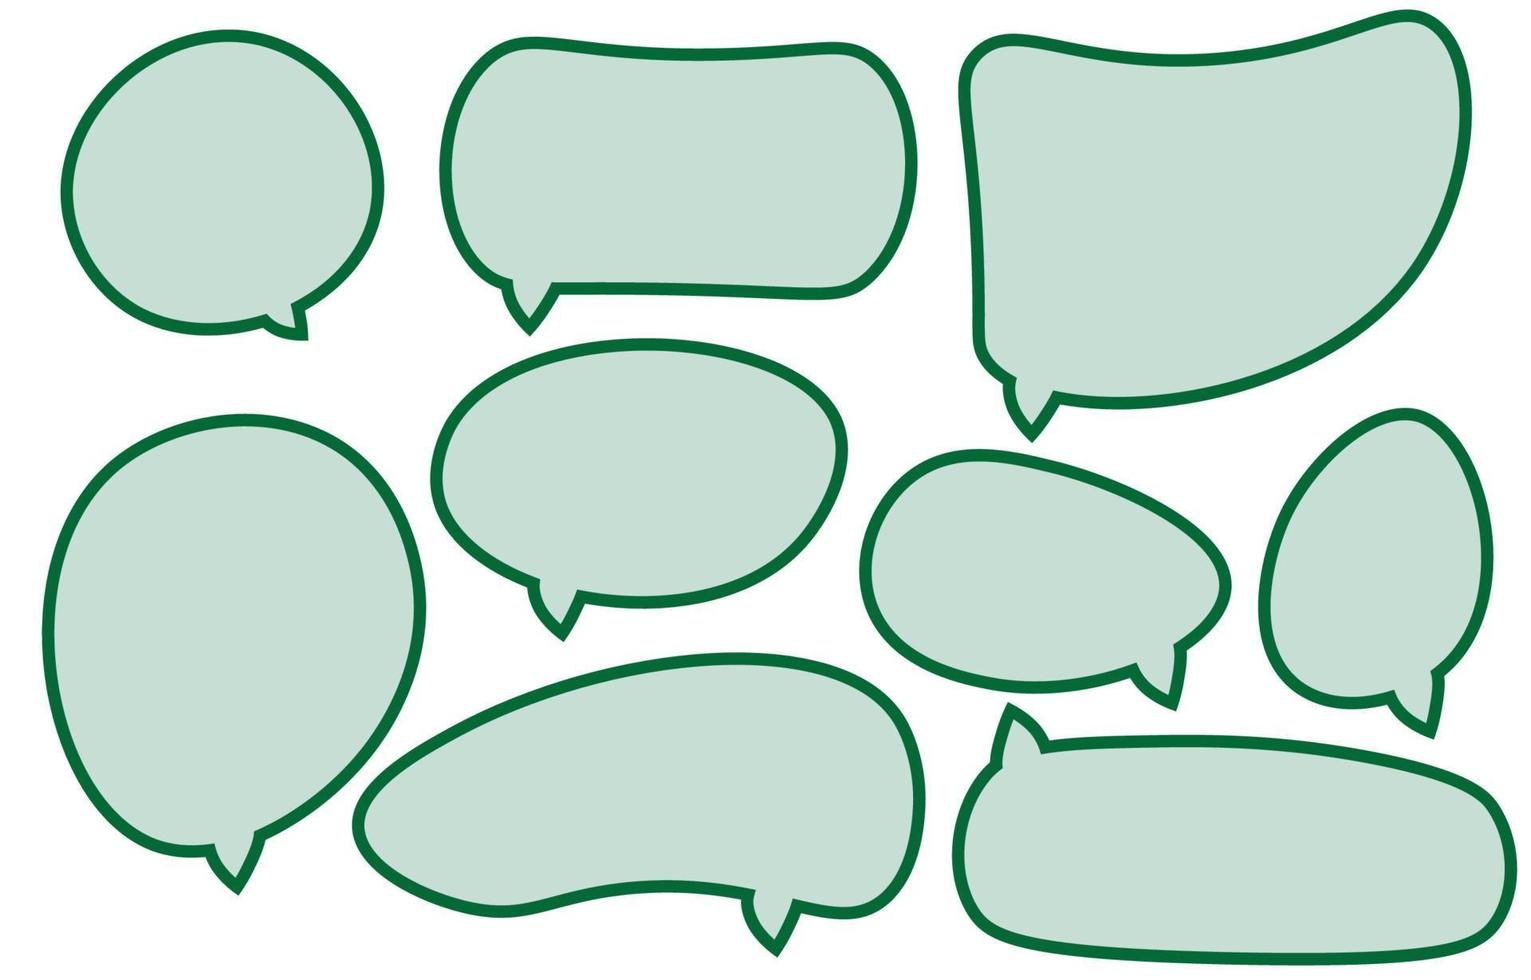 Legen Sie grüne Sprechblasen auf weißem Hintergrund. Chat-Box oder Chat-Vektorquadrat und Doodle-Nachricht oder Kommunikationssymbolwolke, die für Comics und minimalen Nachrichtendialog spricht vektor